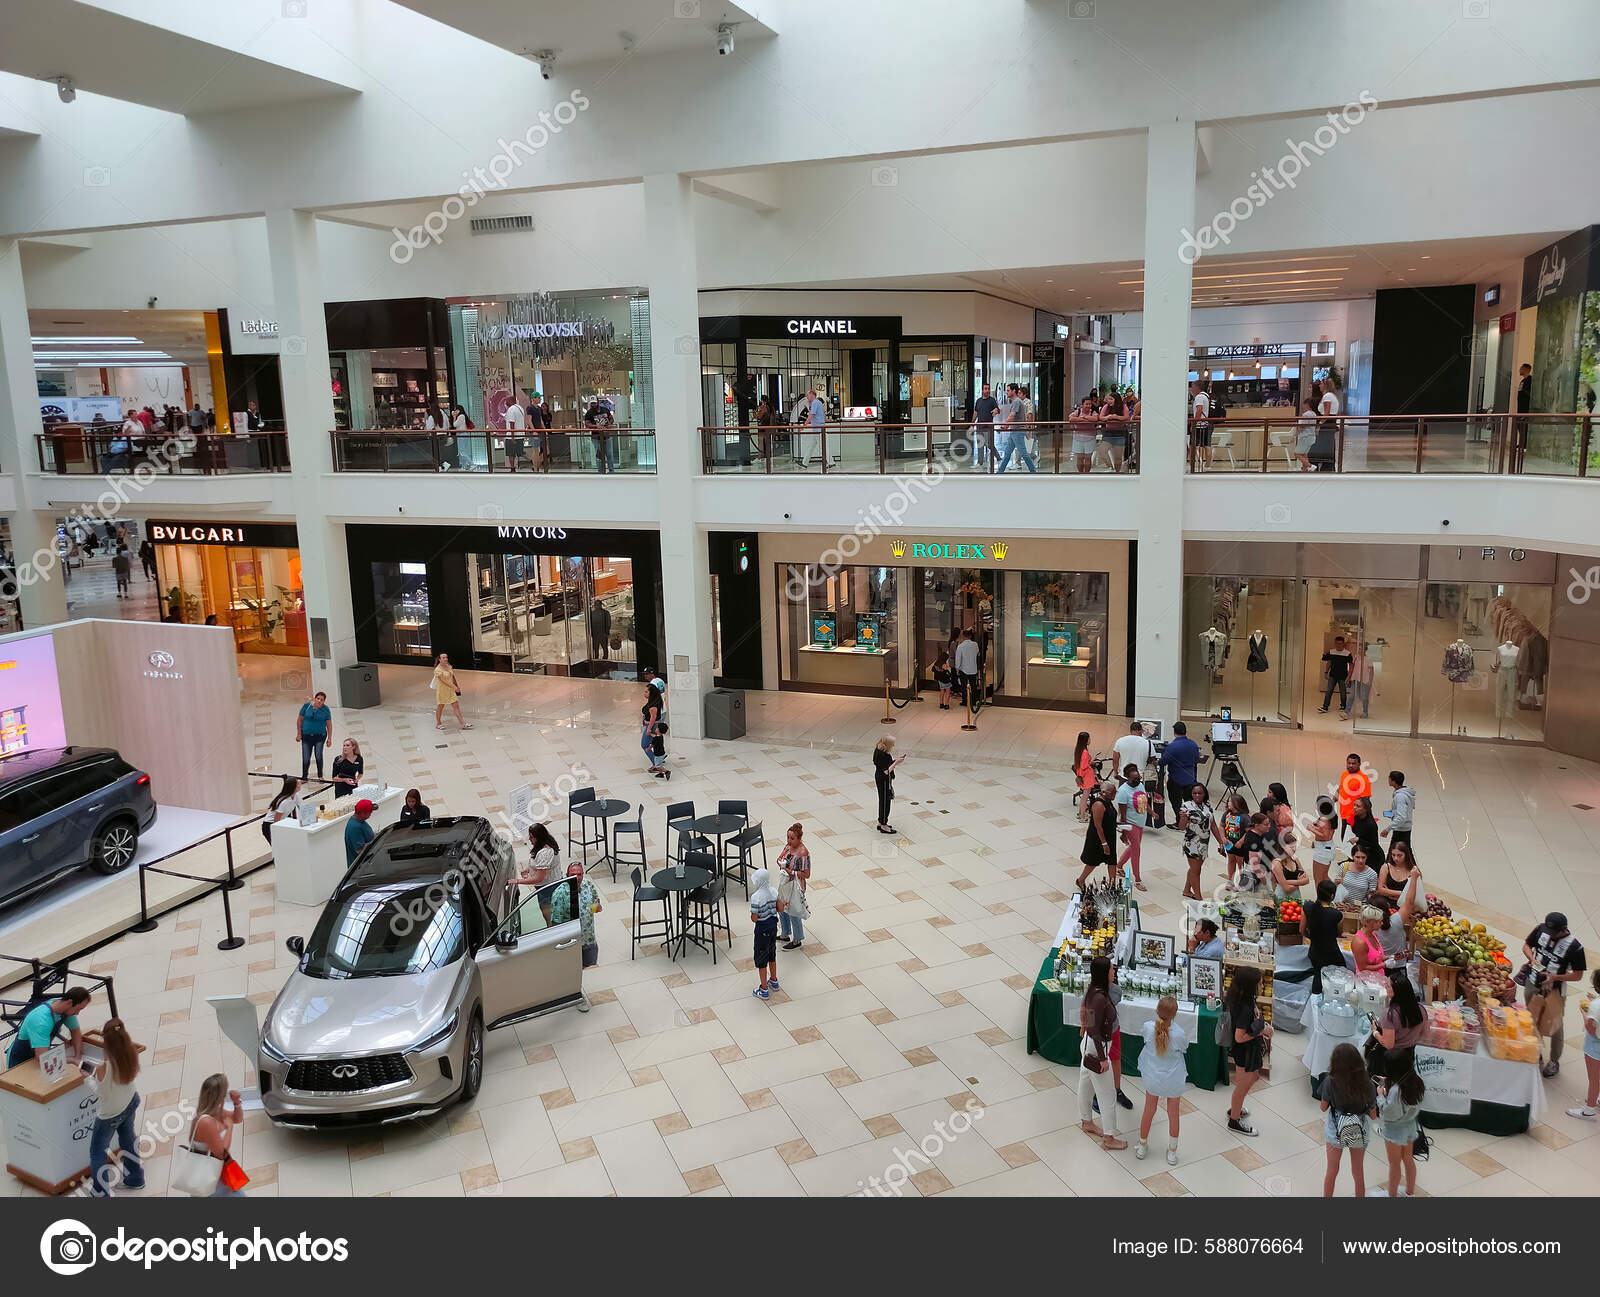 Aventura Mall Shopping in Miami